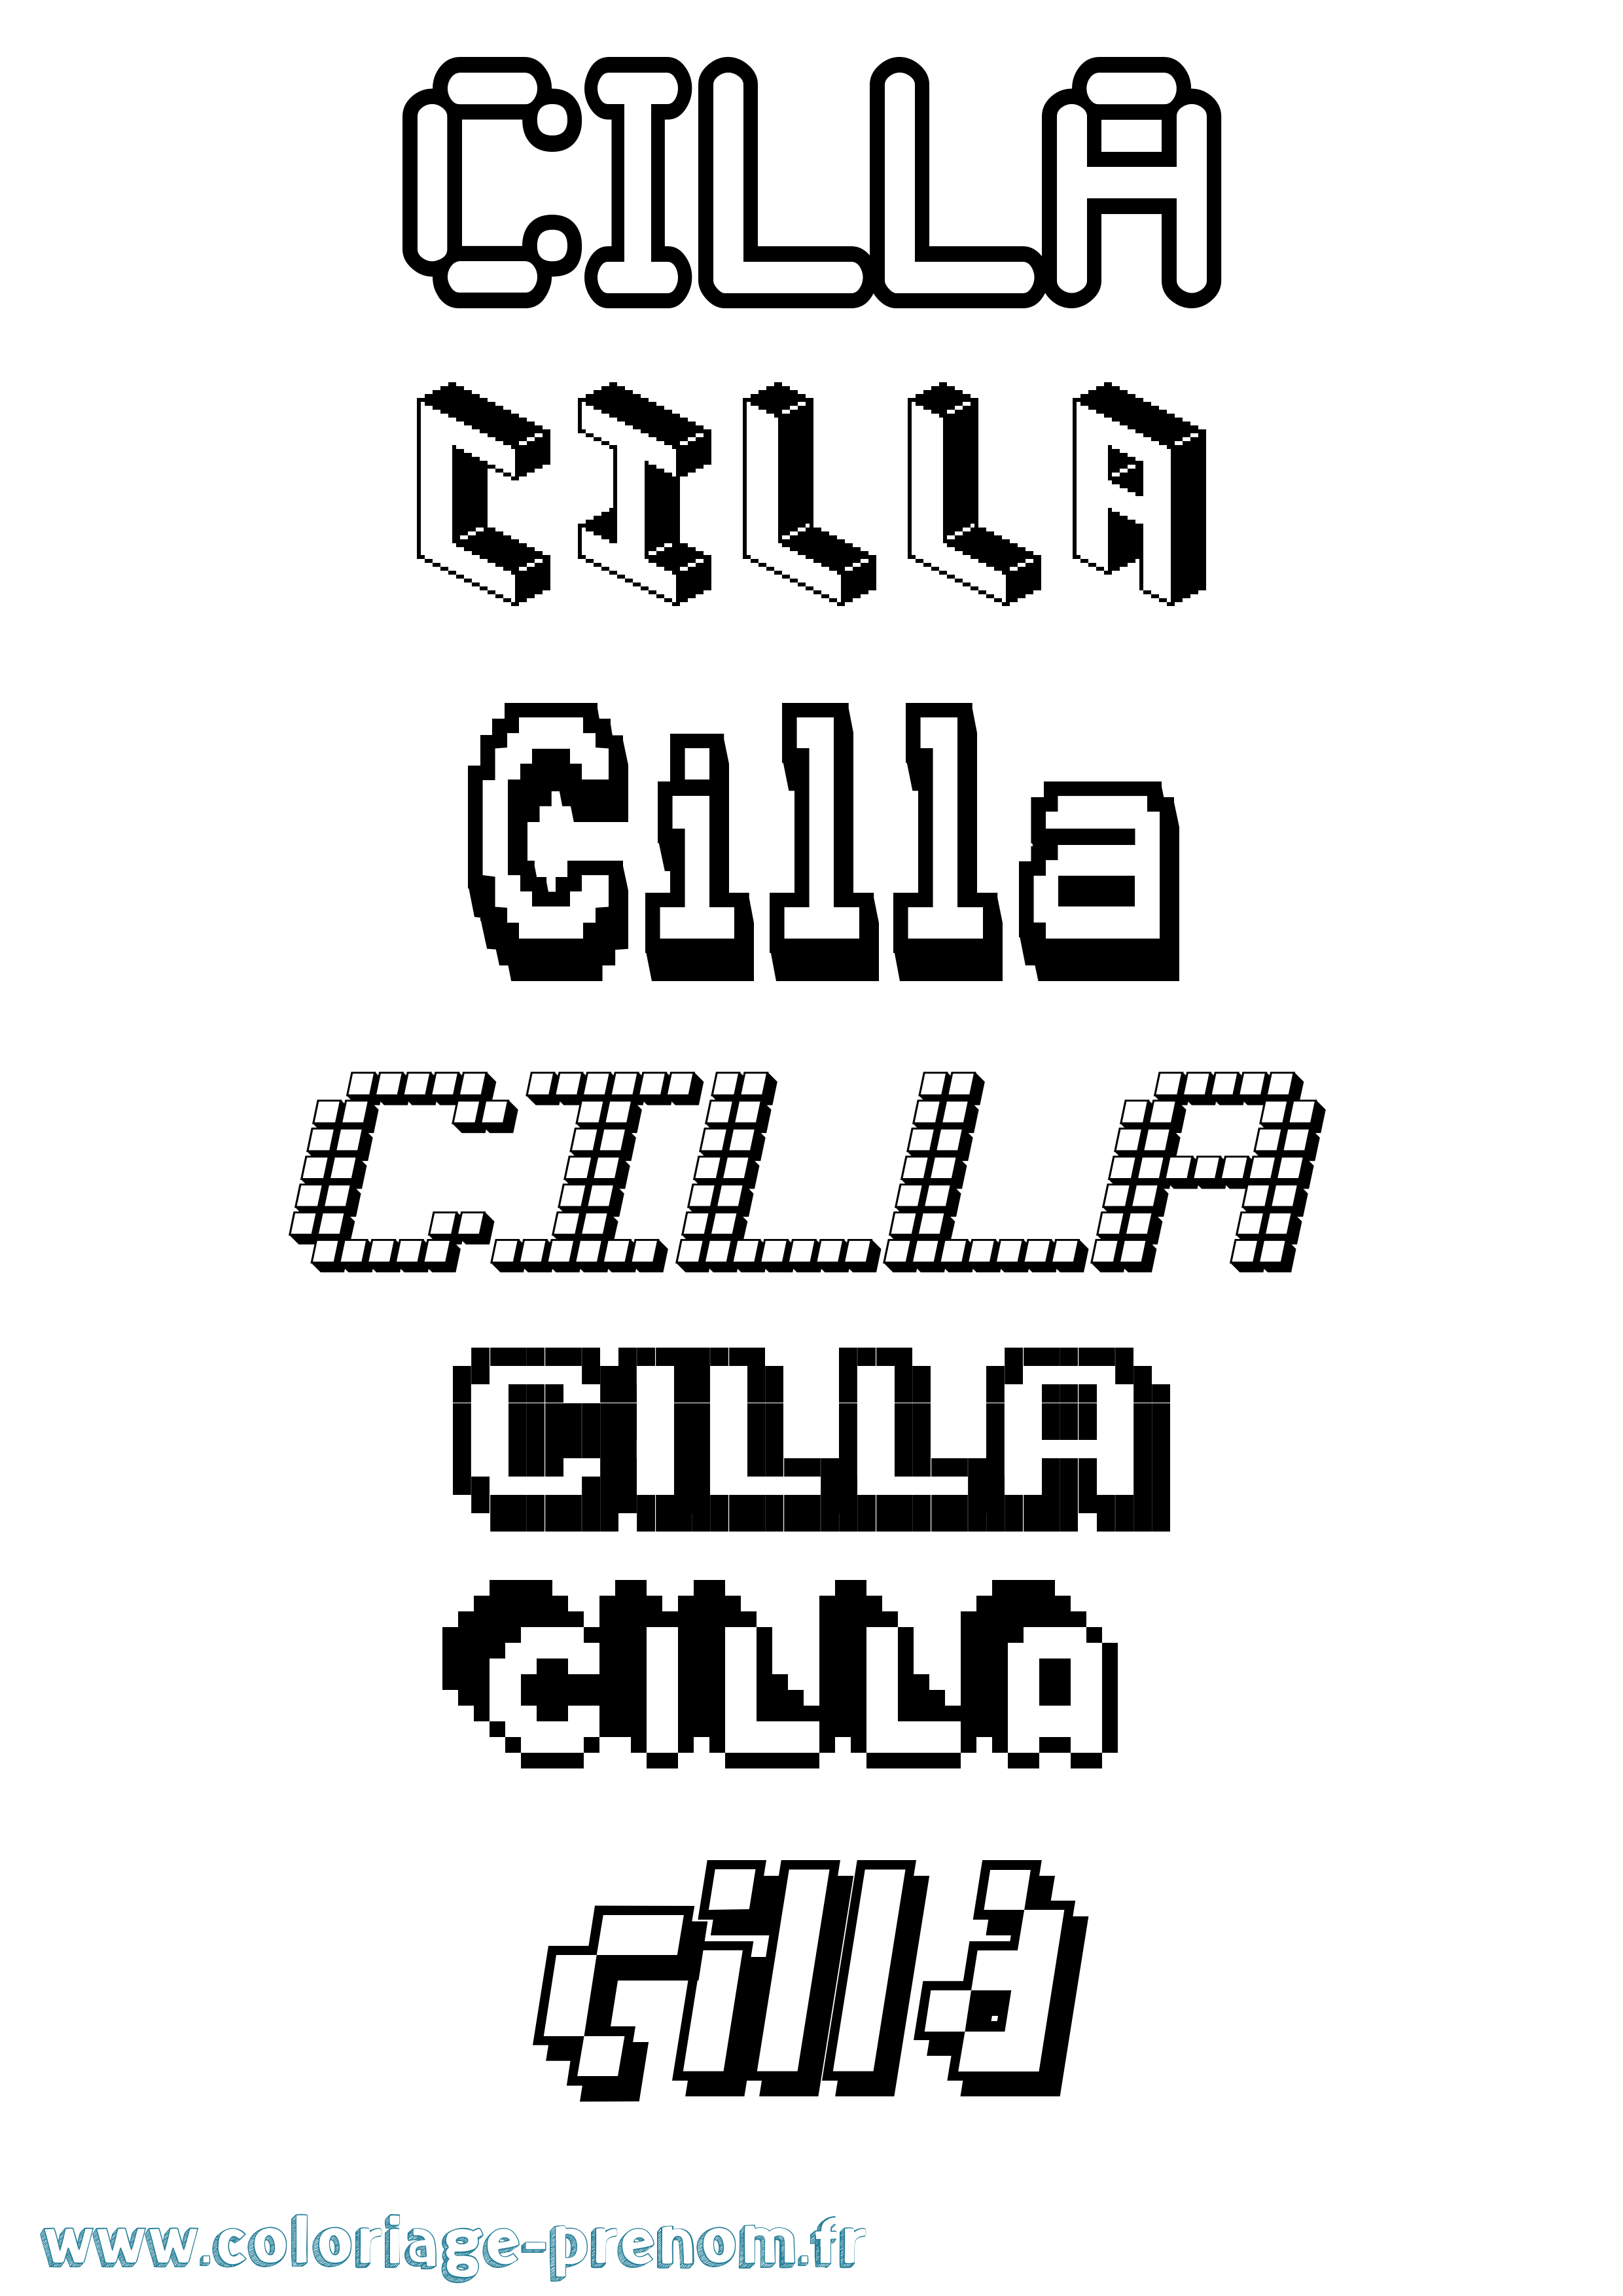 Coloriage prénom Cilla Pixel